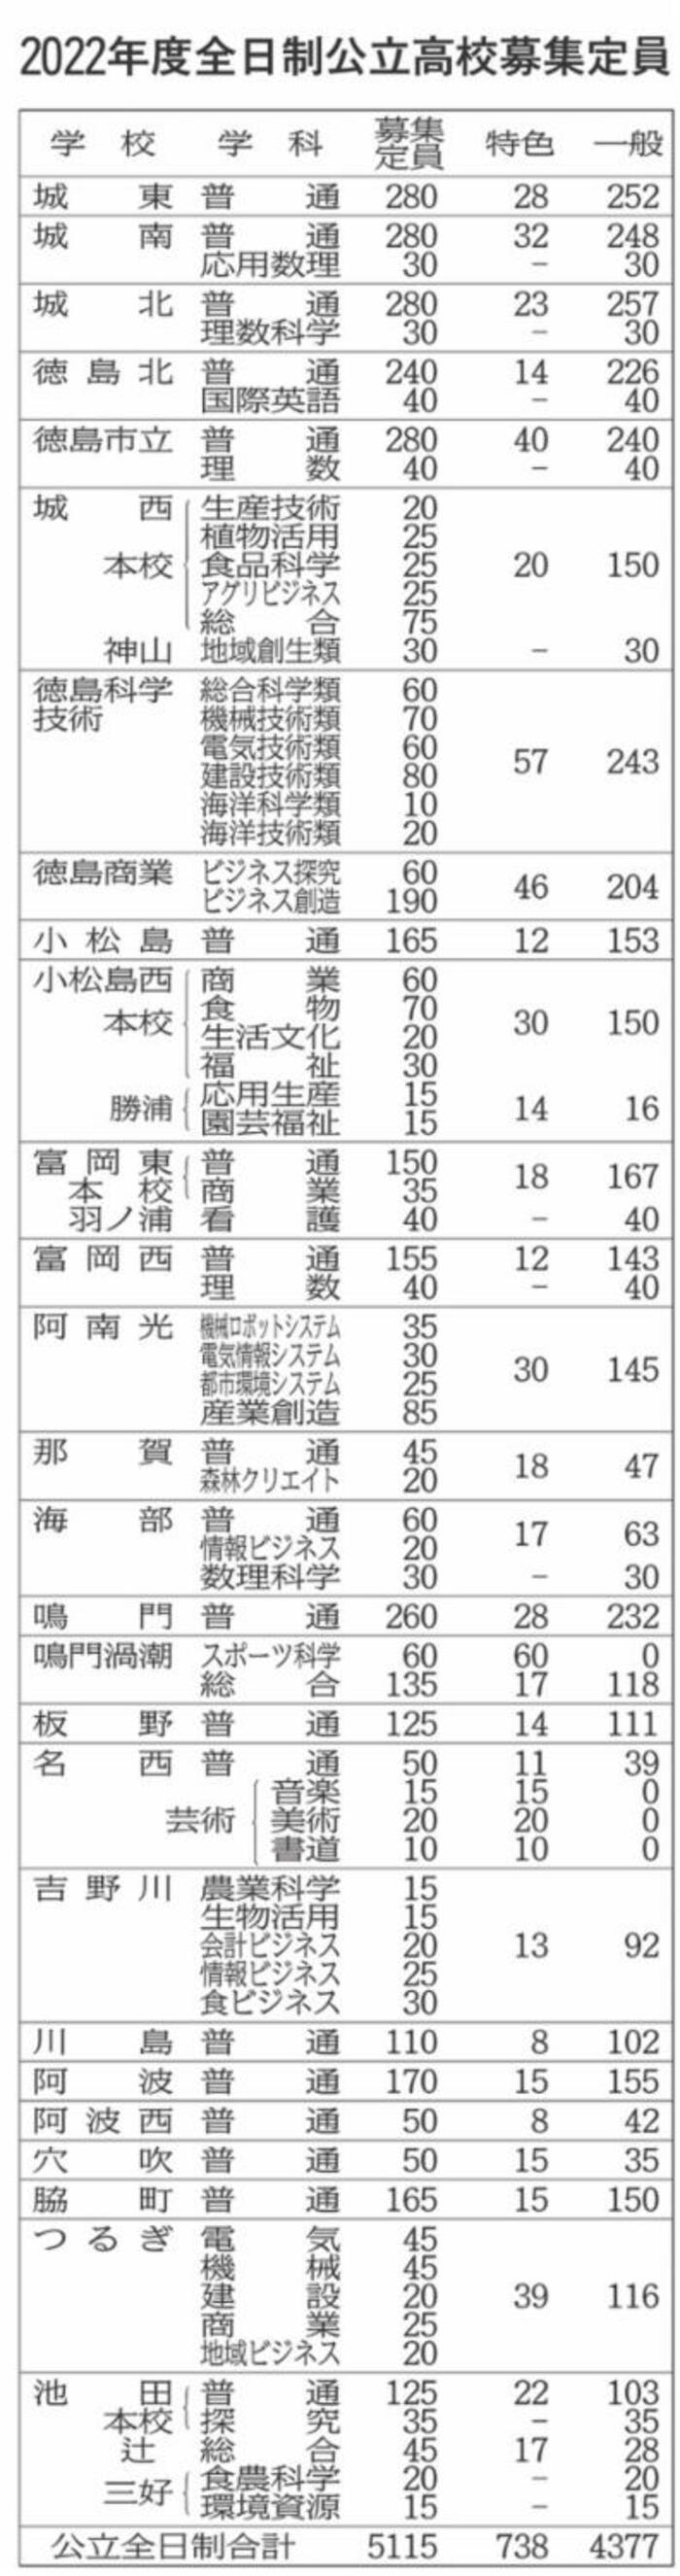 福岡 県 公立 高校 入試 日程 2022